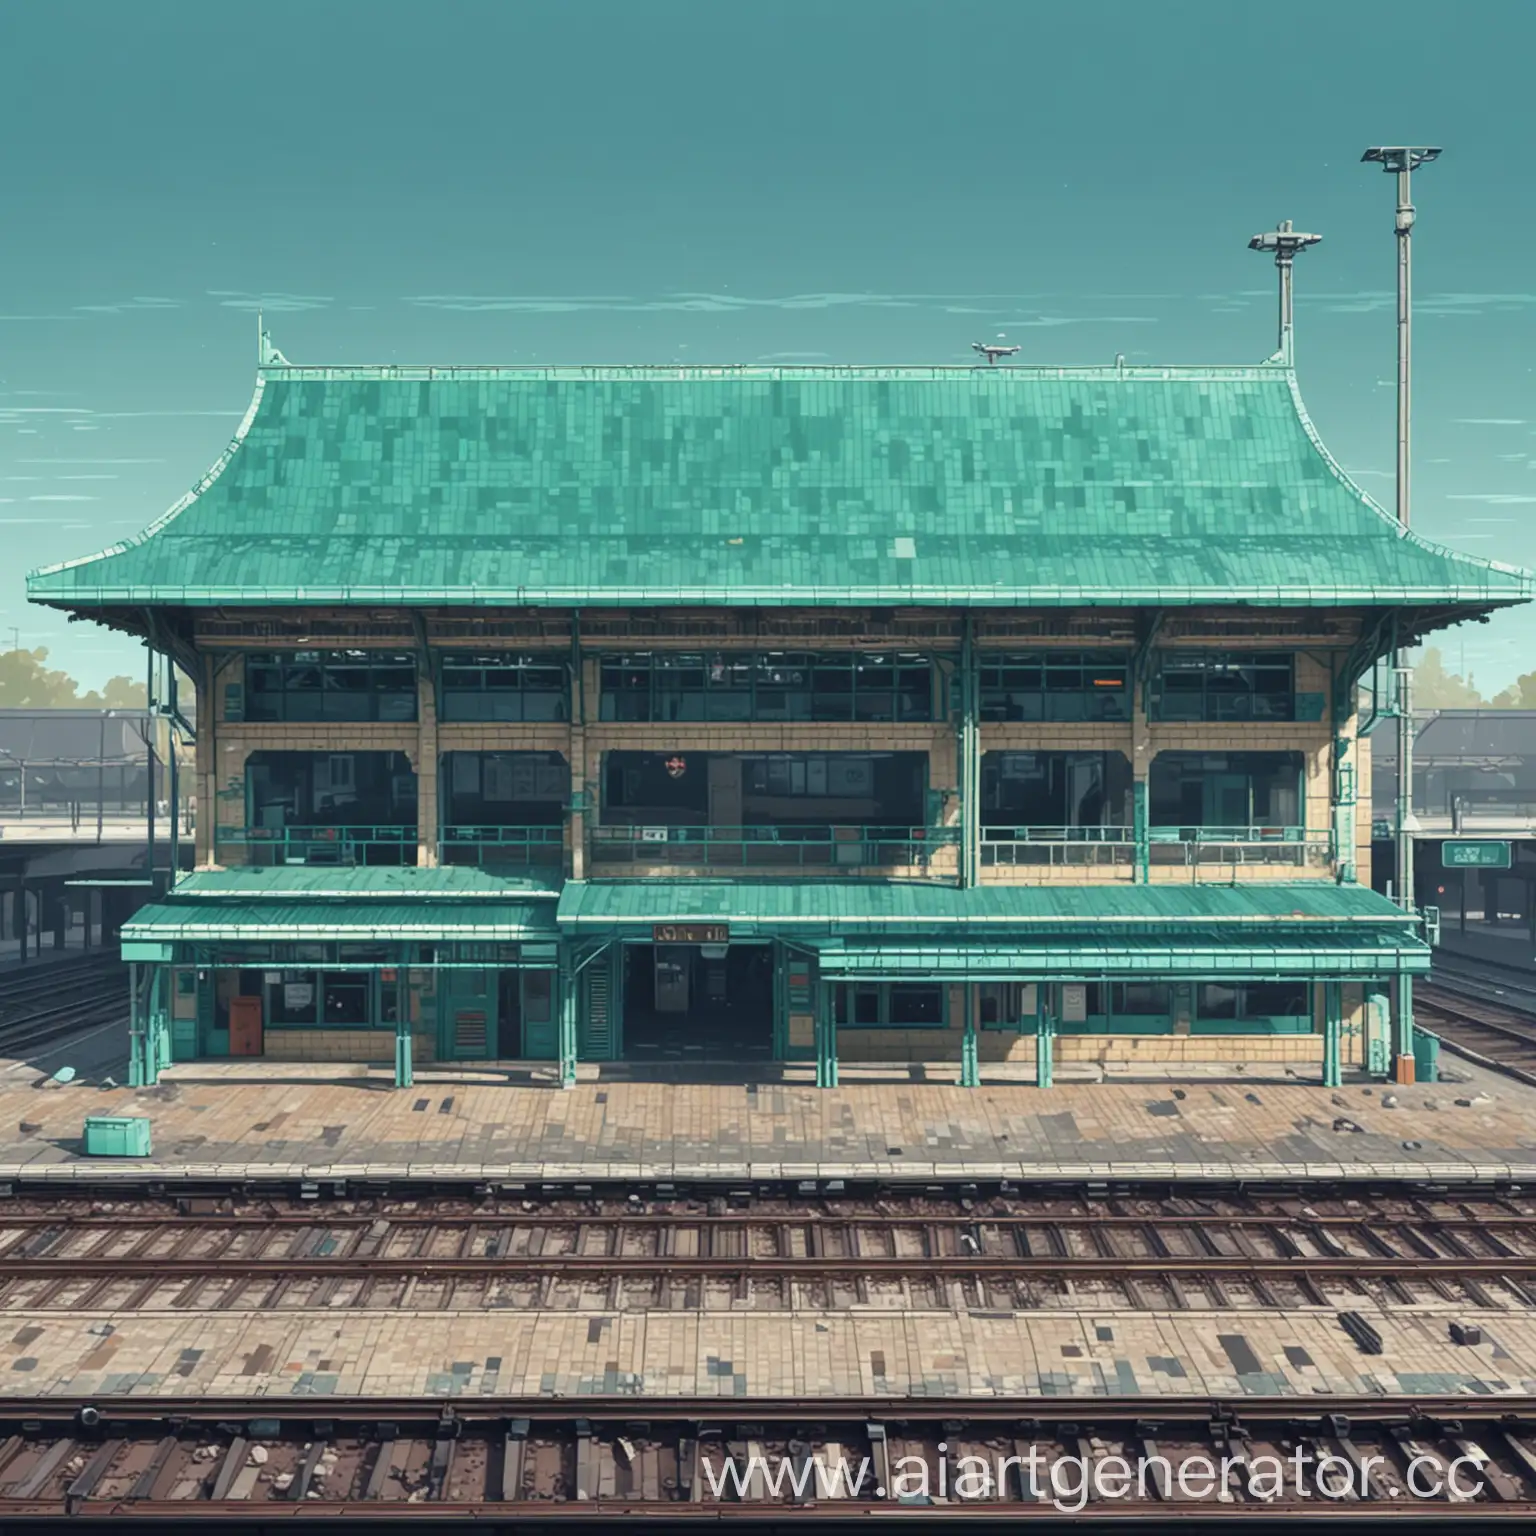 железнодорожный вокзал бирюзового цвета  пиксельный для 2d игры вид сбоку 